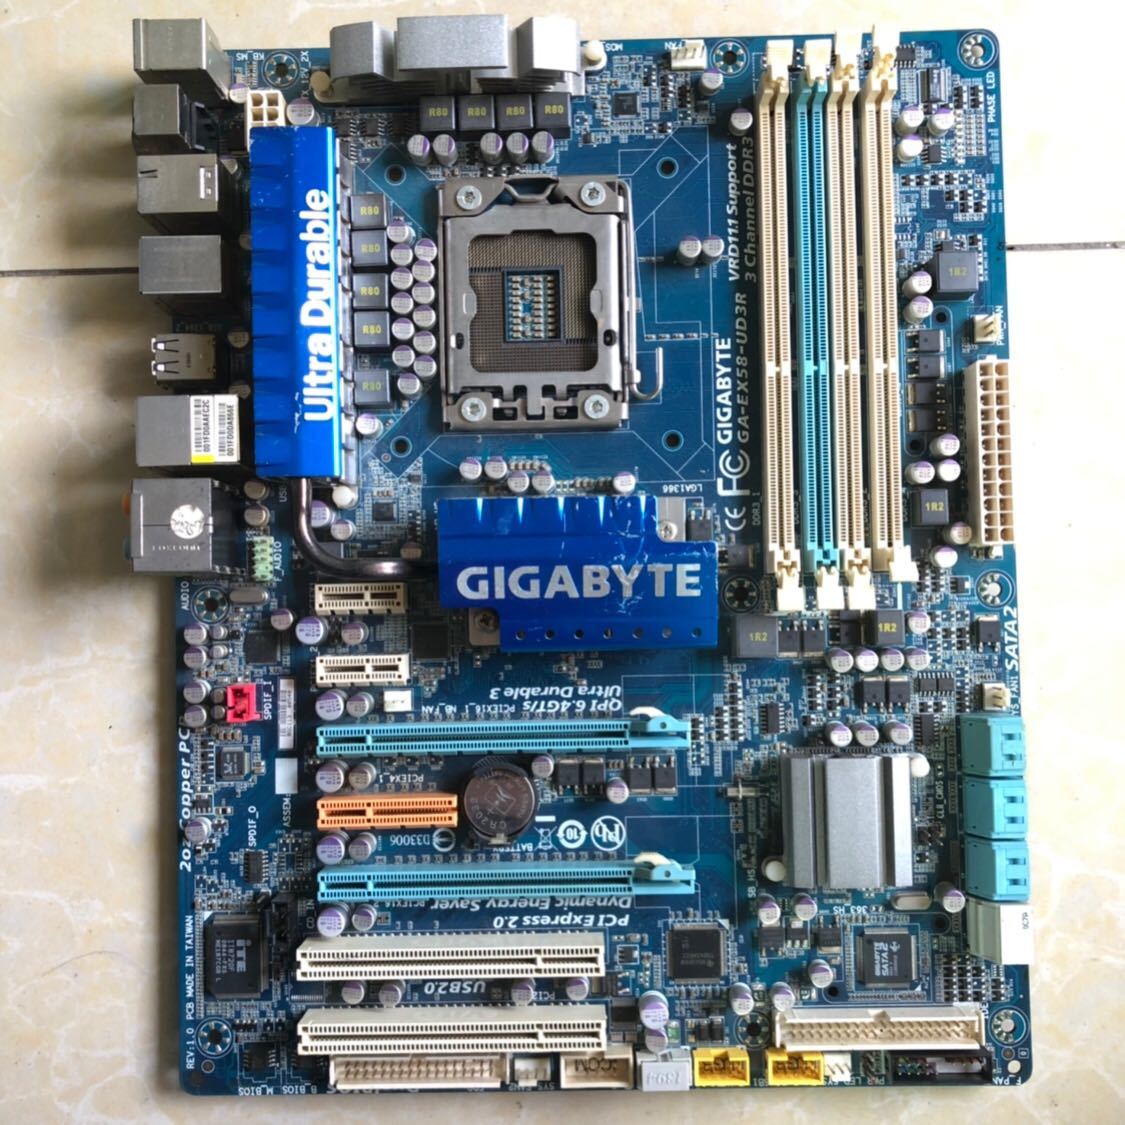 美品 GIGABYTE GA-EX58-UD3R マザーボード Intel X58 LGA 1366 ATX DDR3-